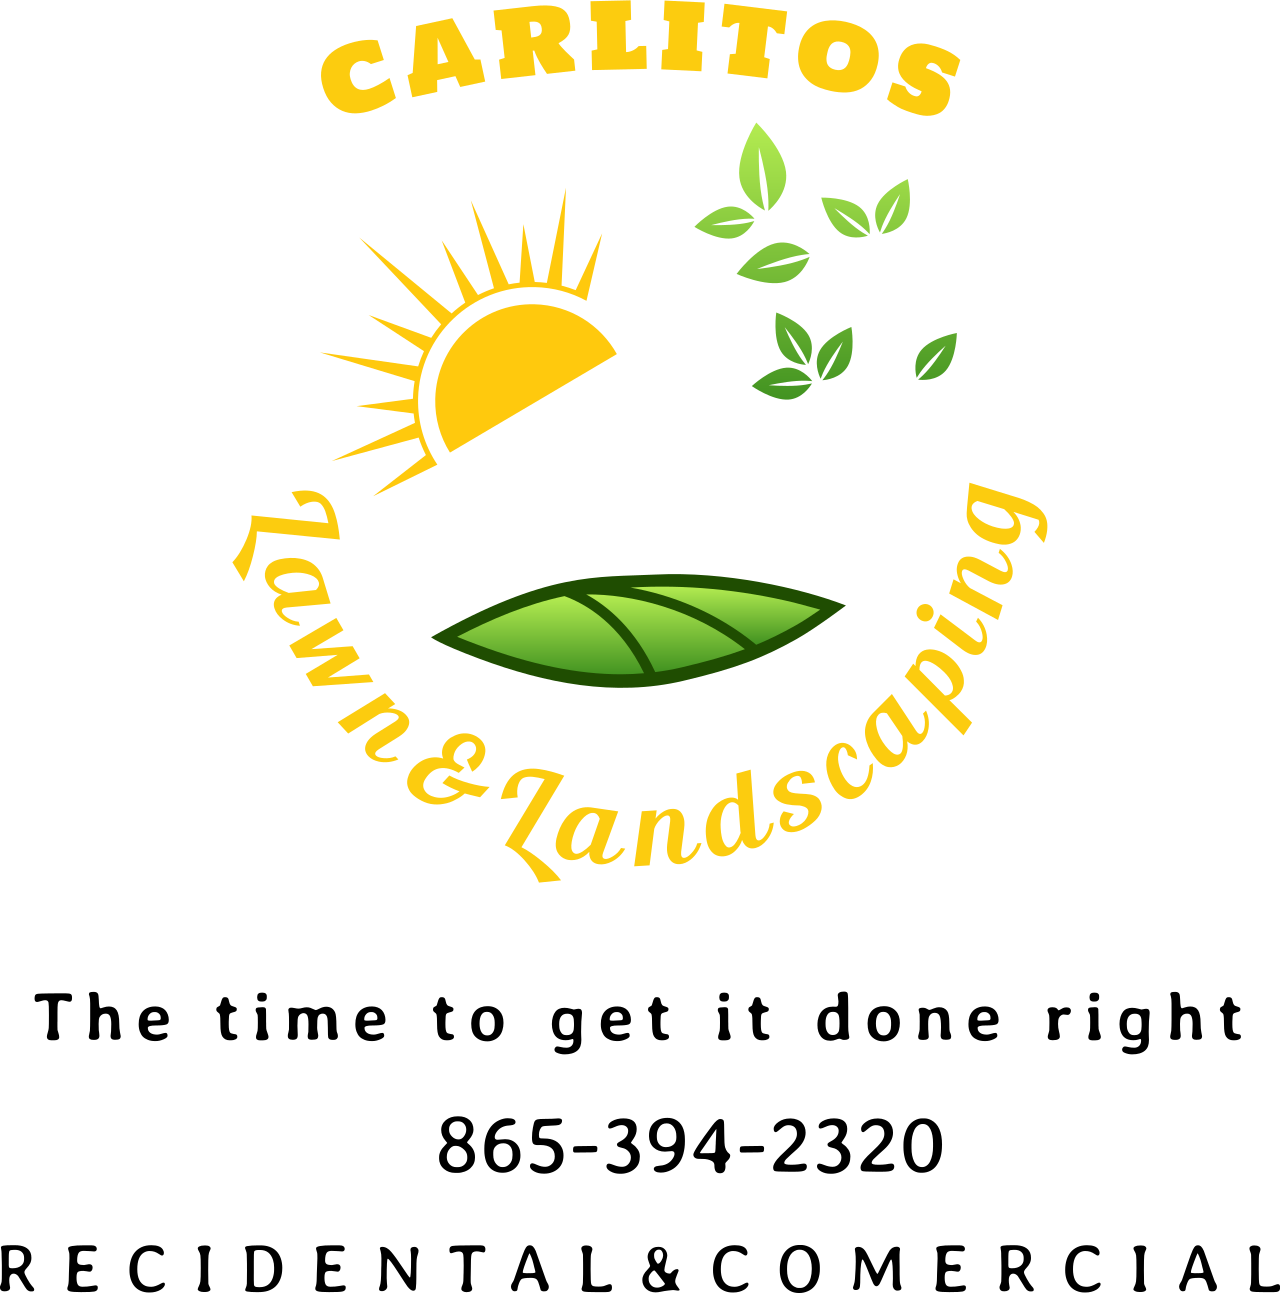 Carlitos's web page